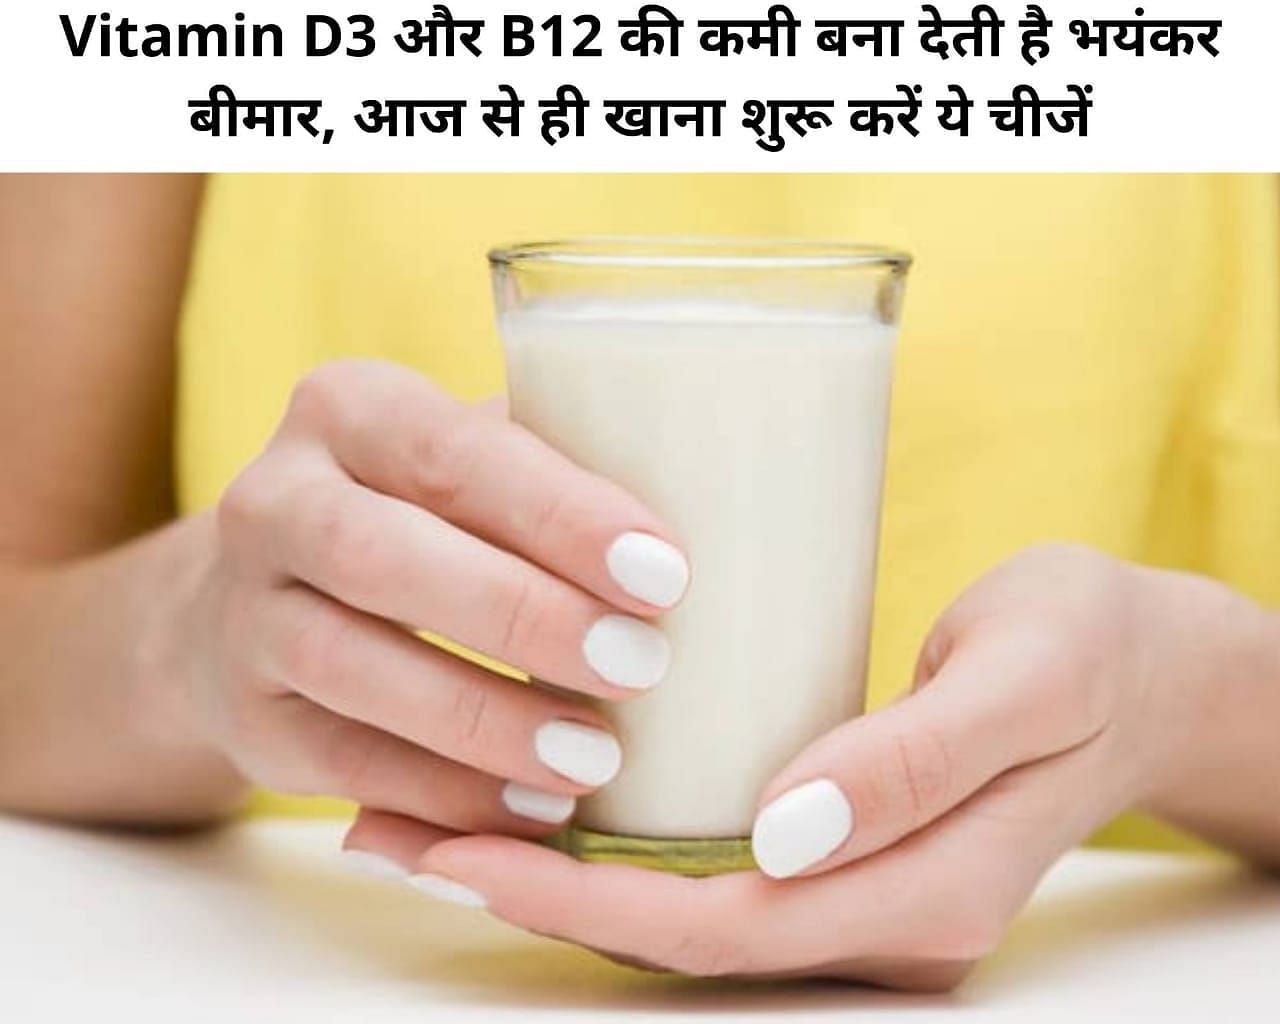 Vitamin D3 और B12 की कमी बना देती है भयंकर बीमार, आज से ही खाना शुरू करें ये चीजें(फोटो - sportskeeda hindi)